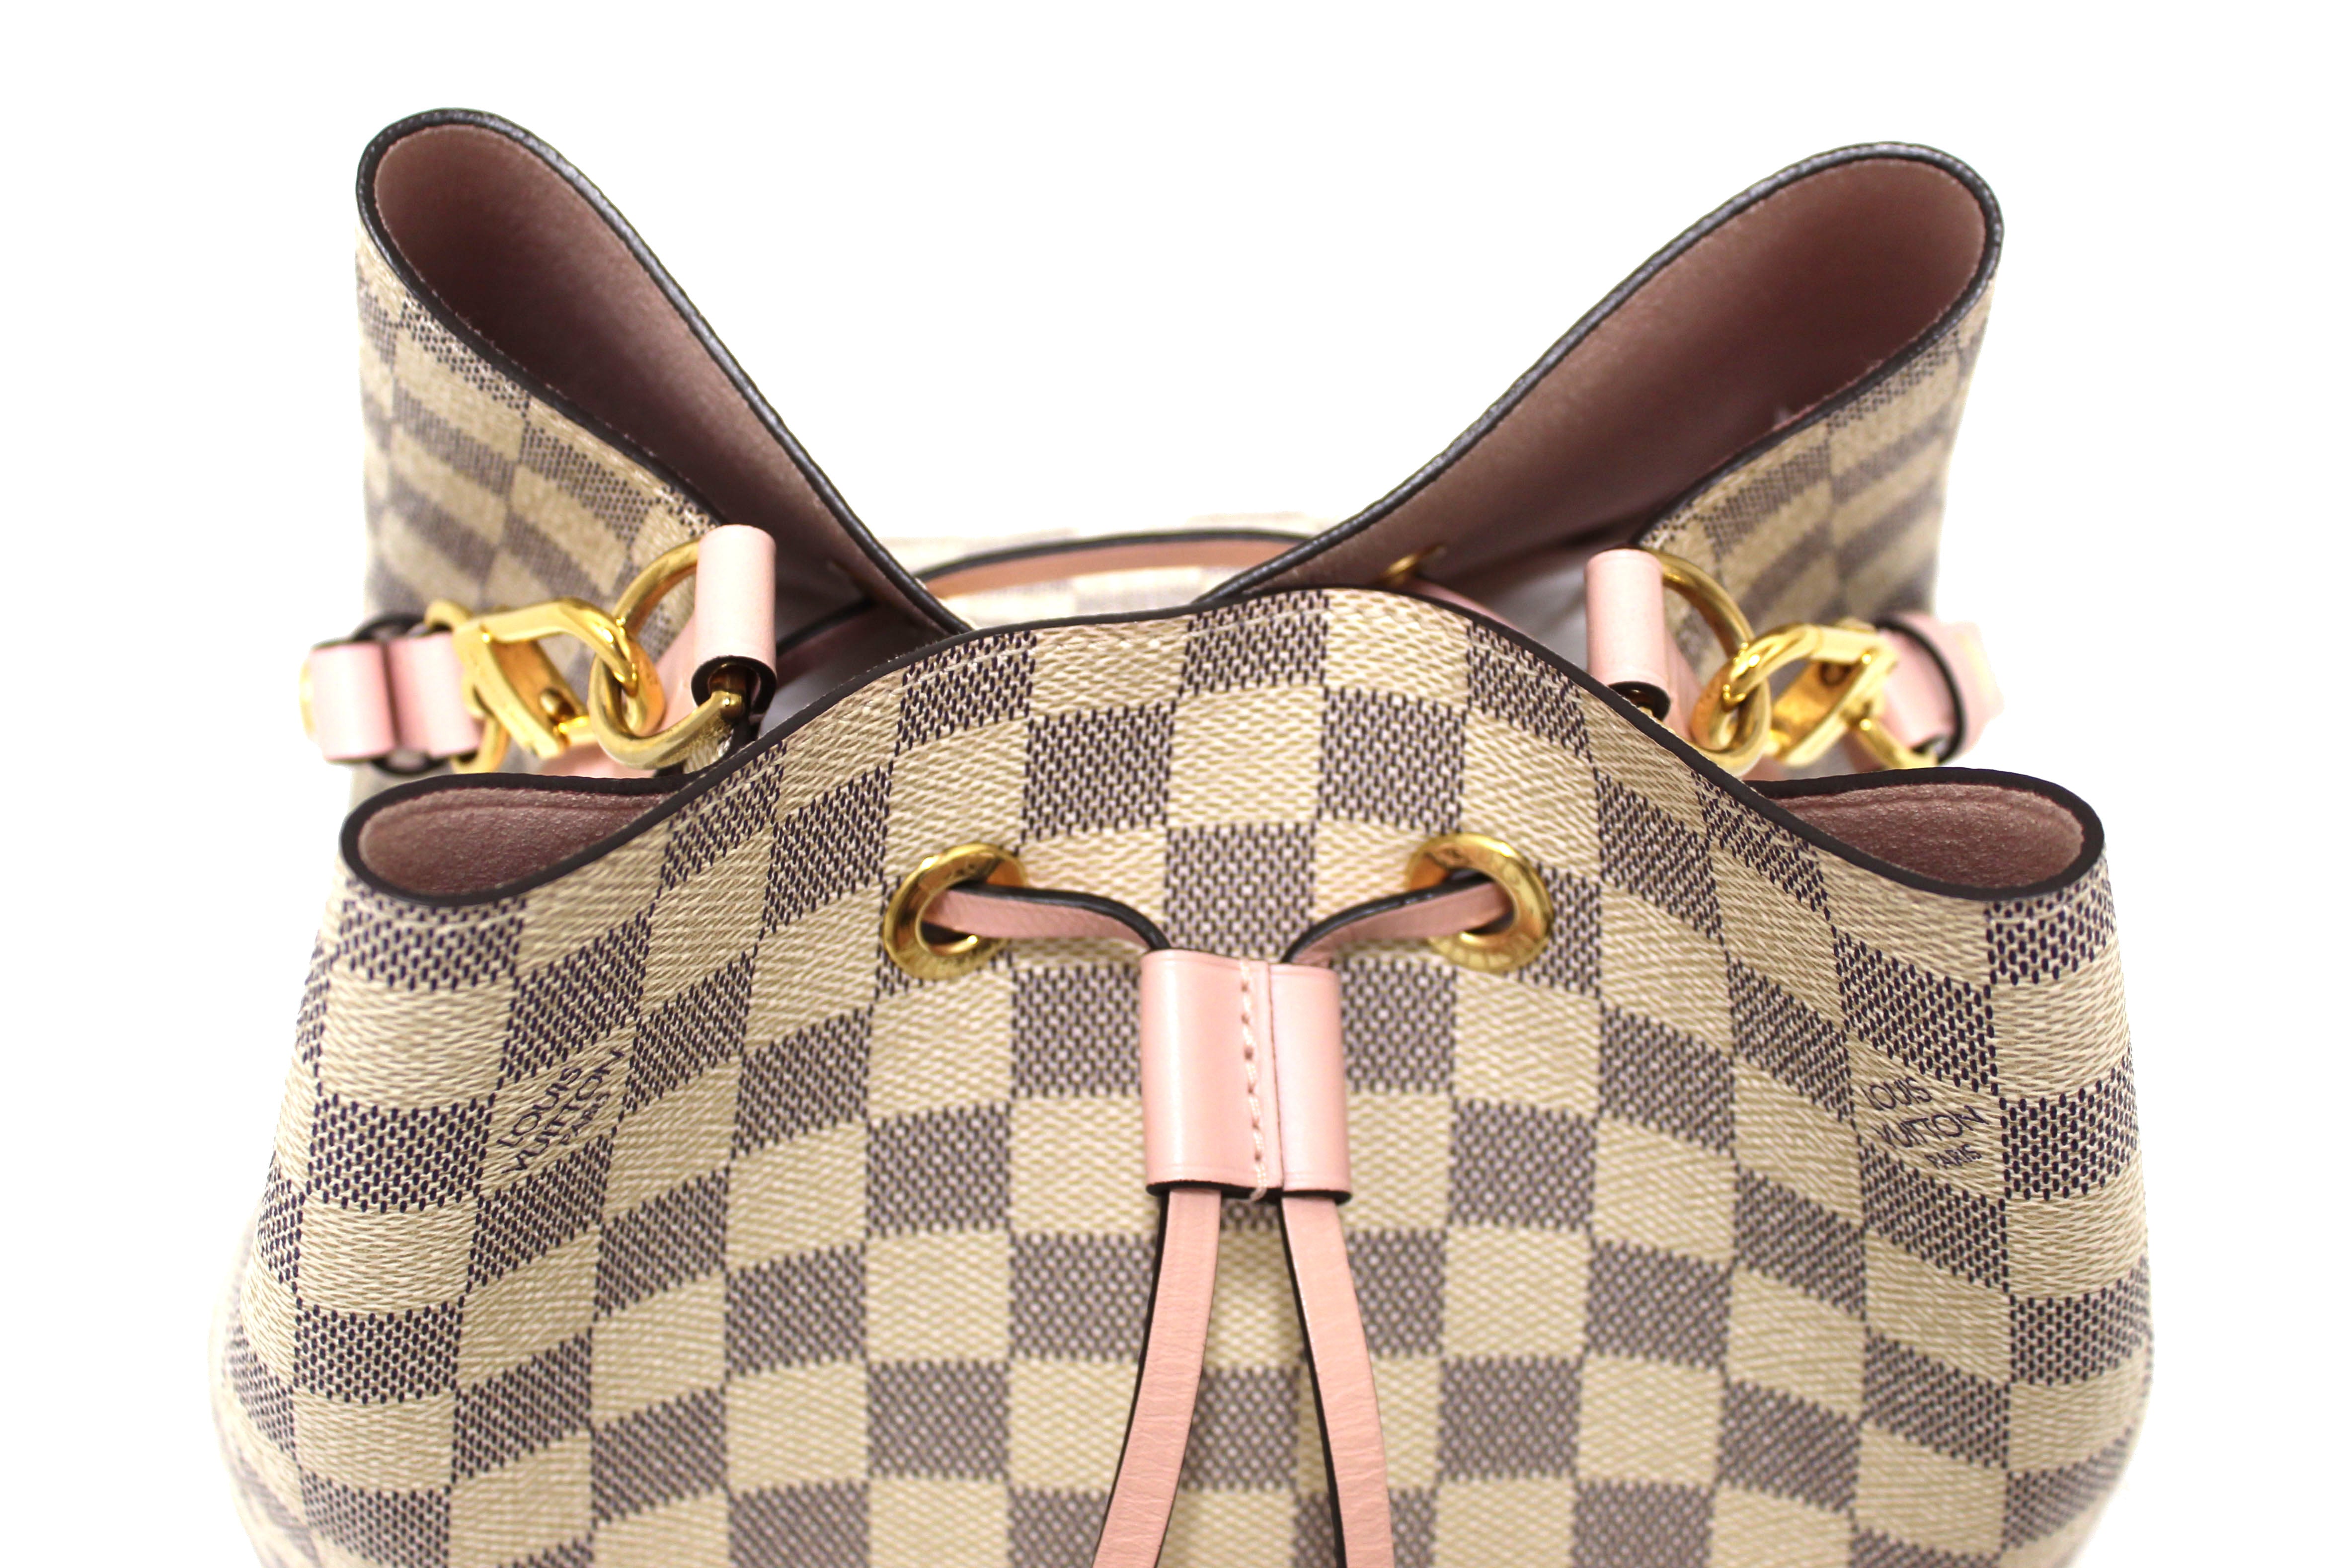 Authentic Louis Vuitton Damier Azur NeoNoe MM Shoulder Bag – Paris